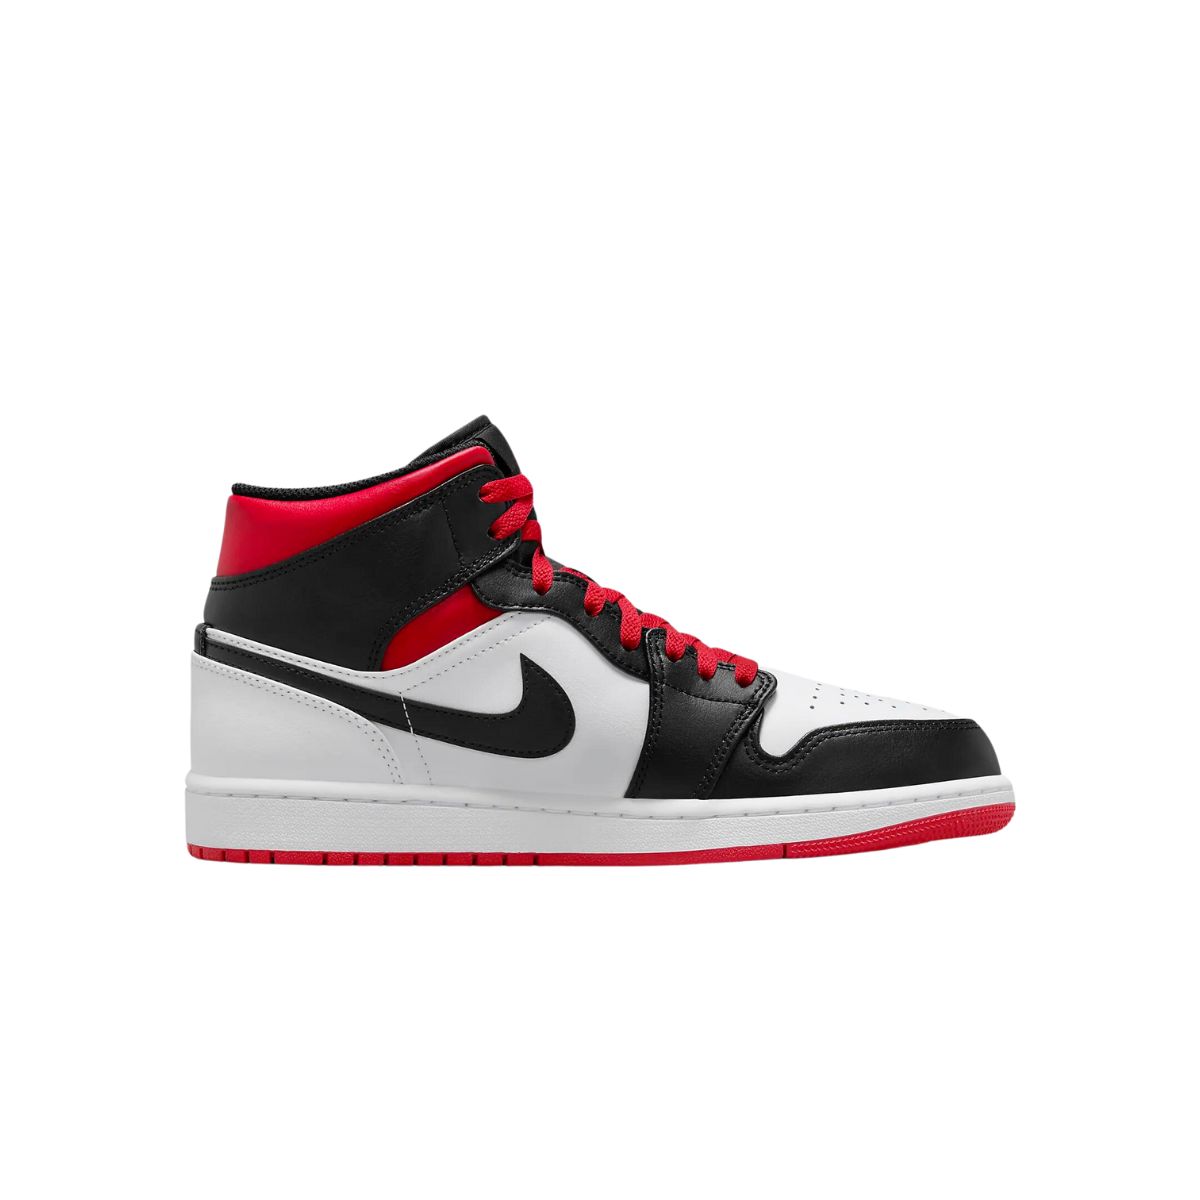 Nike Men's/Womens Air Jordan 1 Basketball Shoes